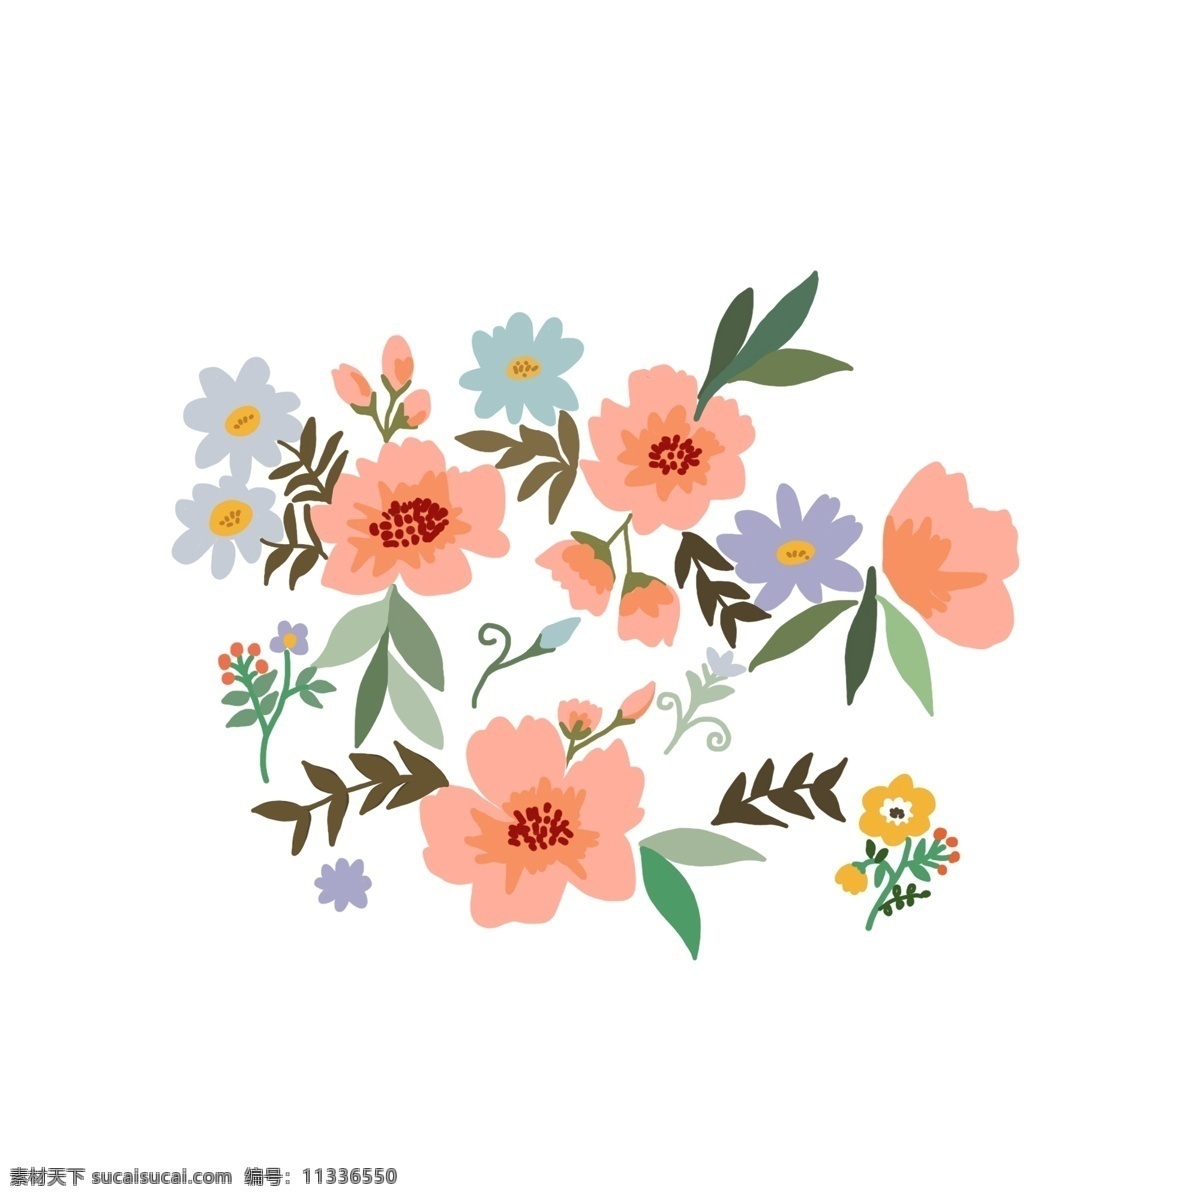 手绘 花卉 植物 图案 卡通 贴纸 元素 手绘花卉 手绘植物 设计元素 卡通贴纸 花 装饰元素